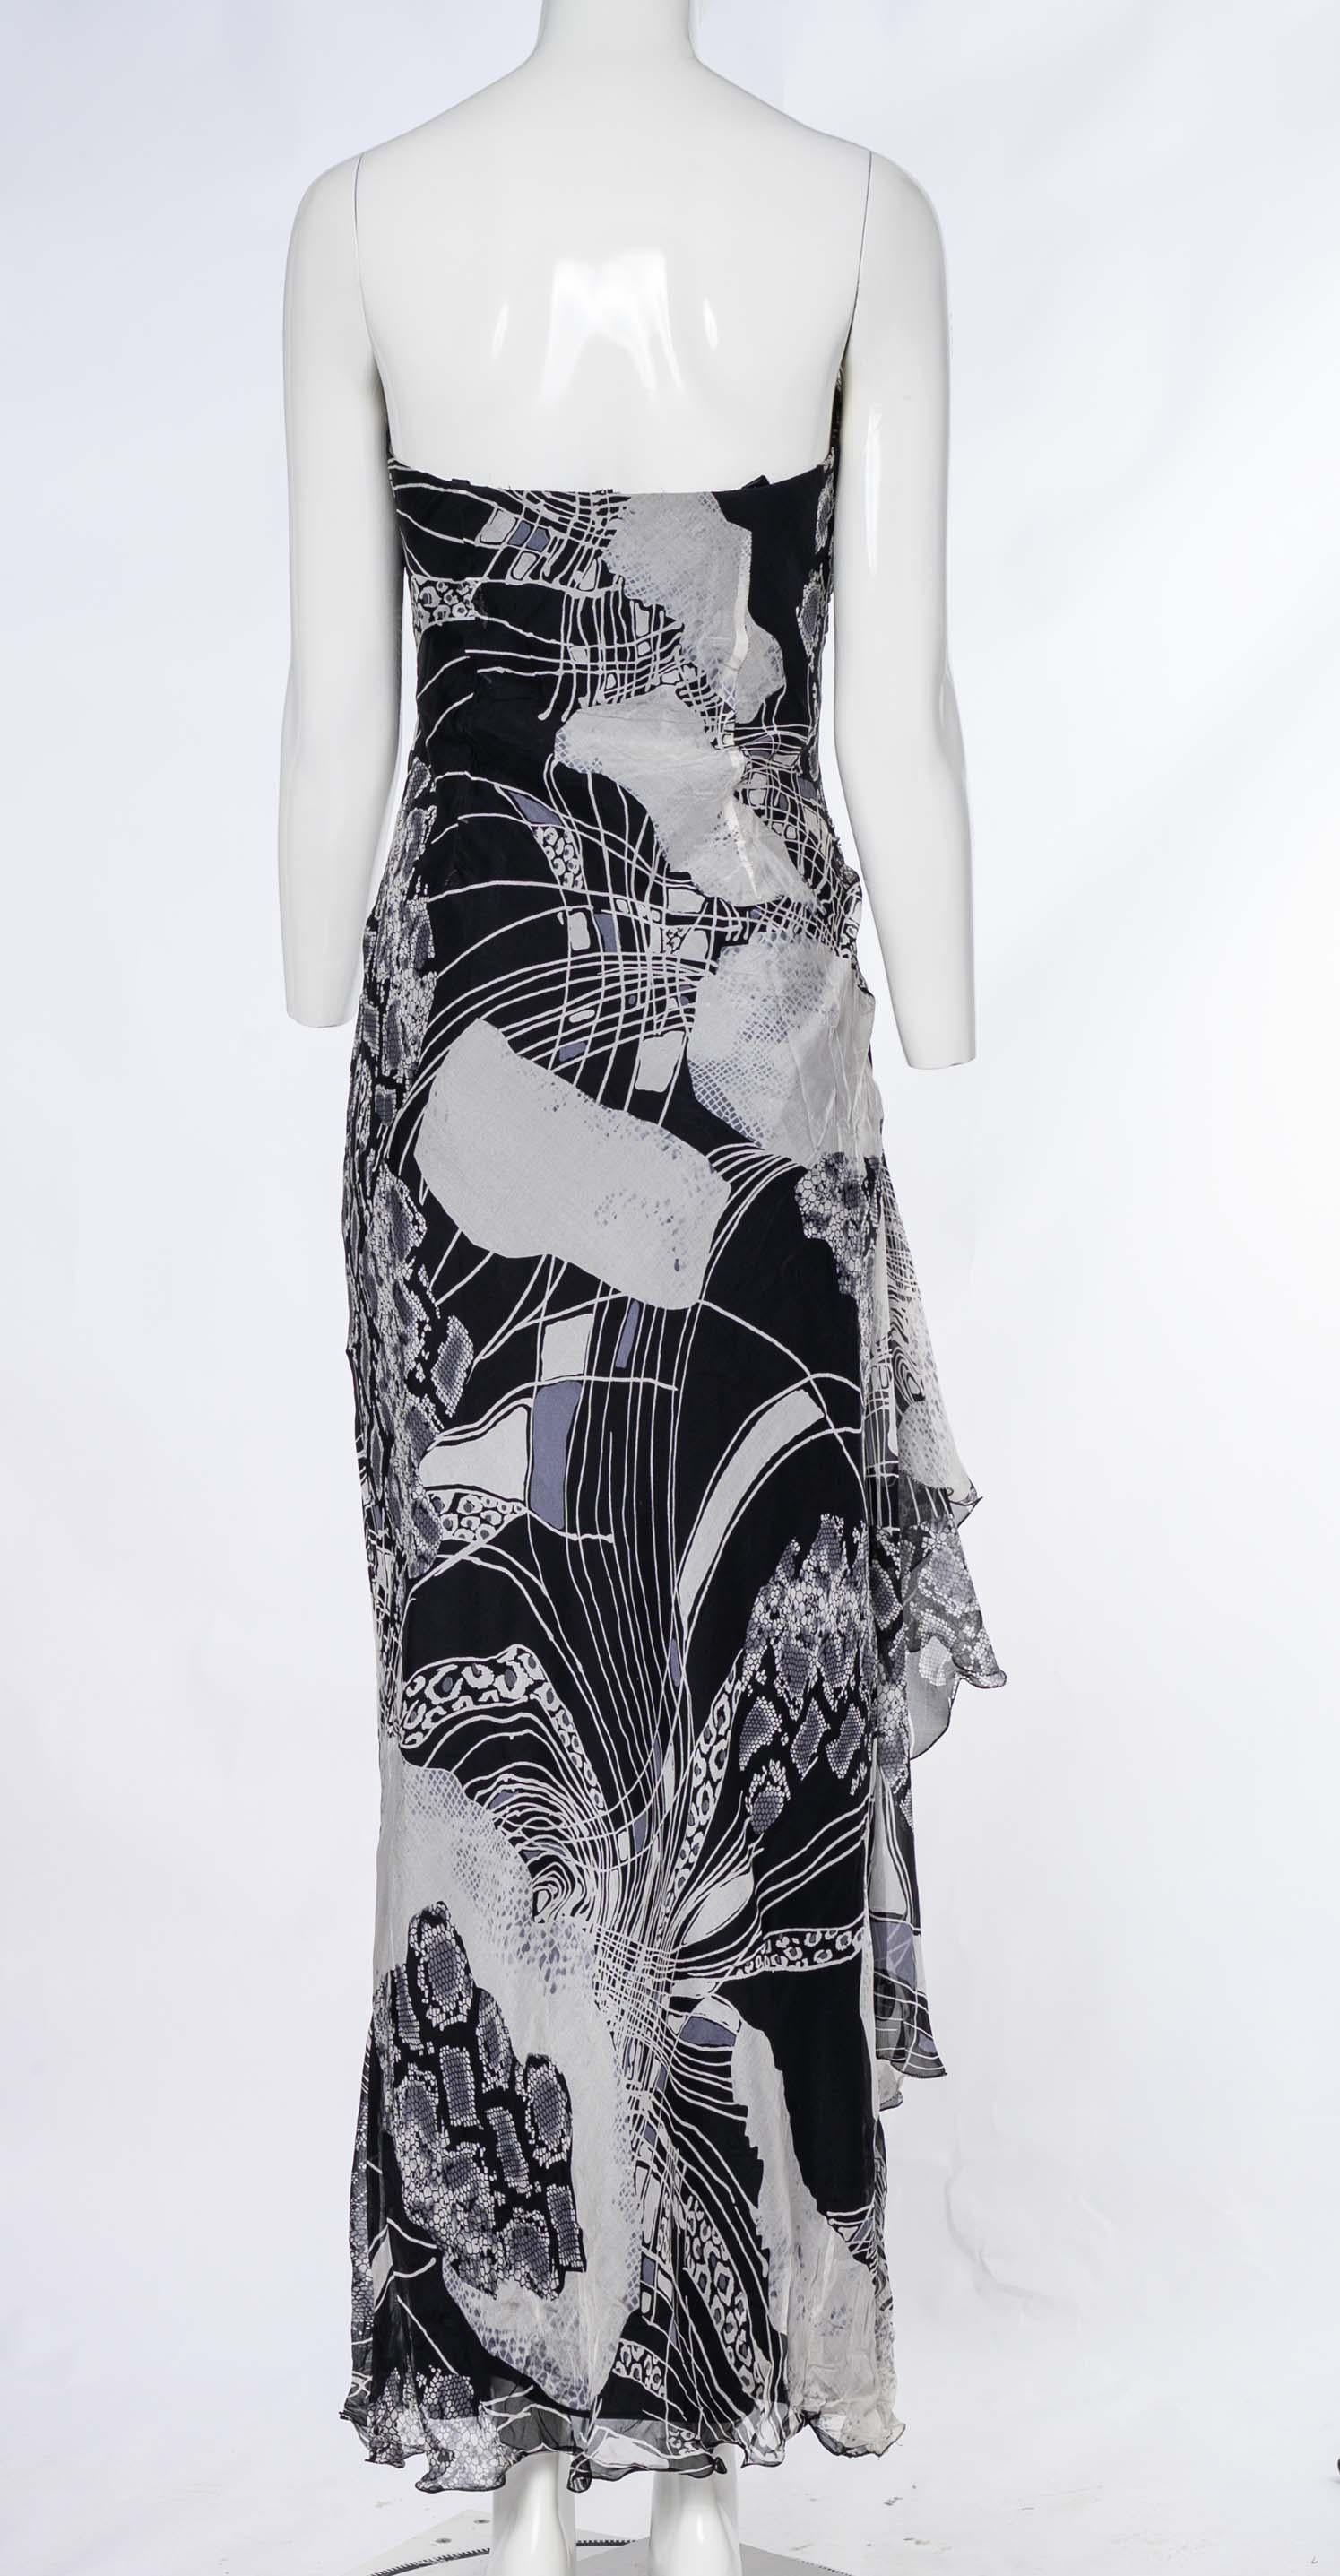 Das Diane Freis Monochrom-Kleid mit abstraktem Print aus schwarzer Seide ist ein schickes und raffiniertes Stück, das einen fesselnden abstrakten Print präsentiert. Dieses trägerlose Kleid aus luxuriöser schwarzer Seide hat einen herzförmigen